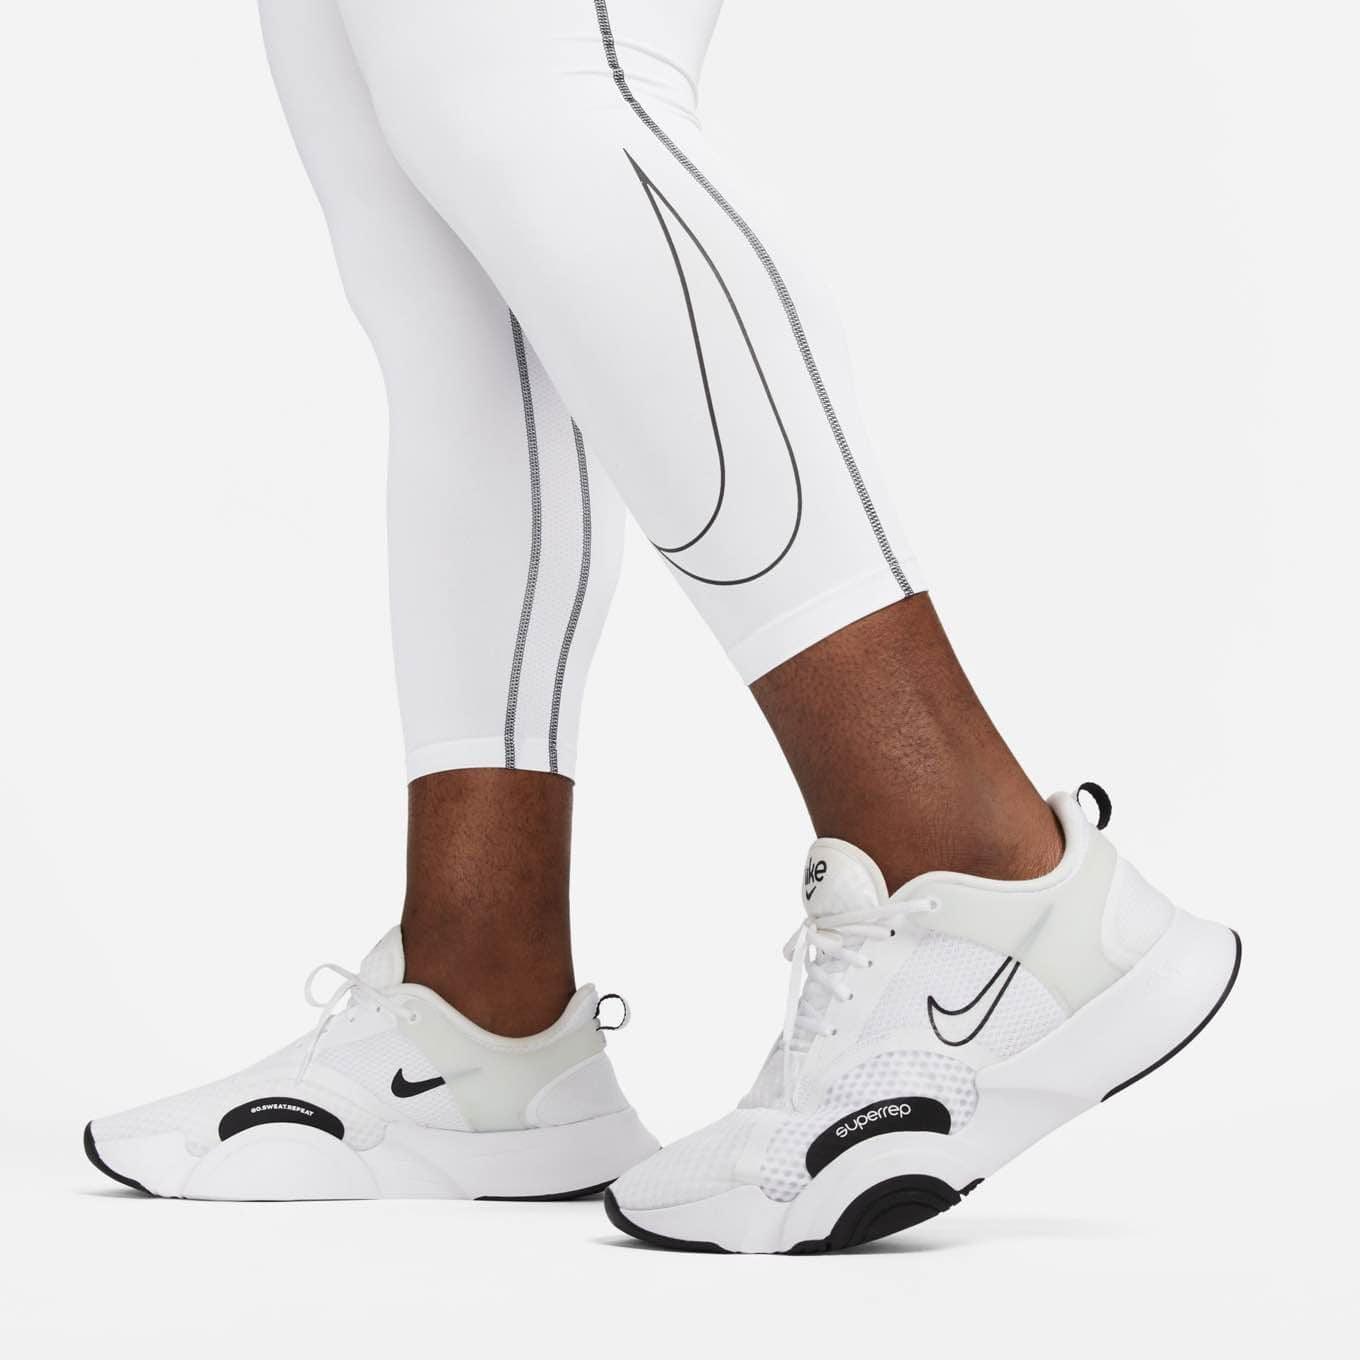 Nike Pro Dri-FIT